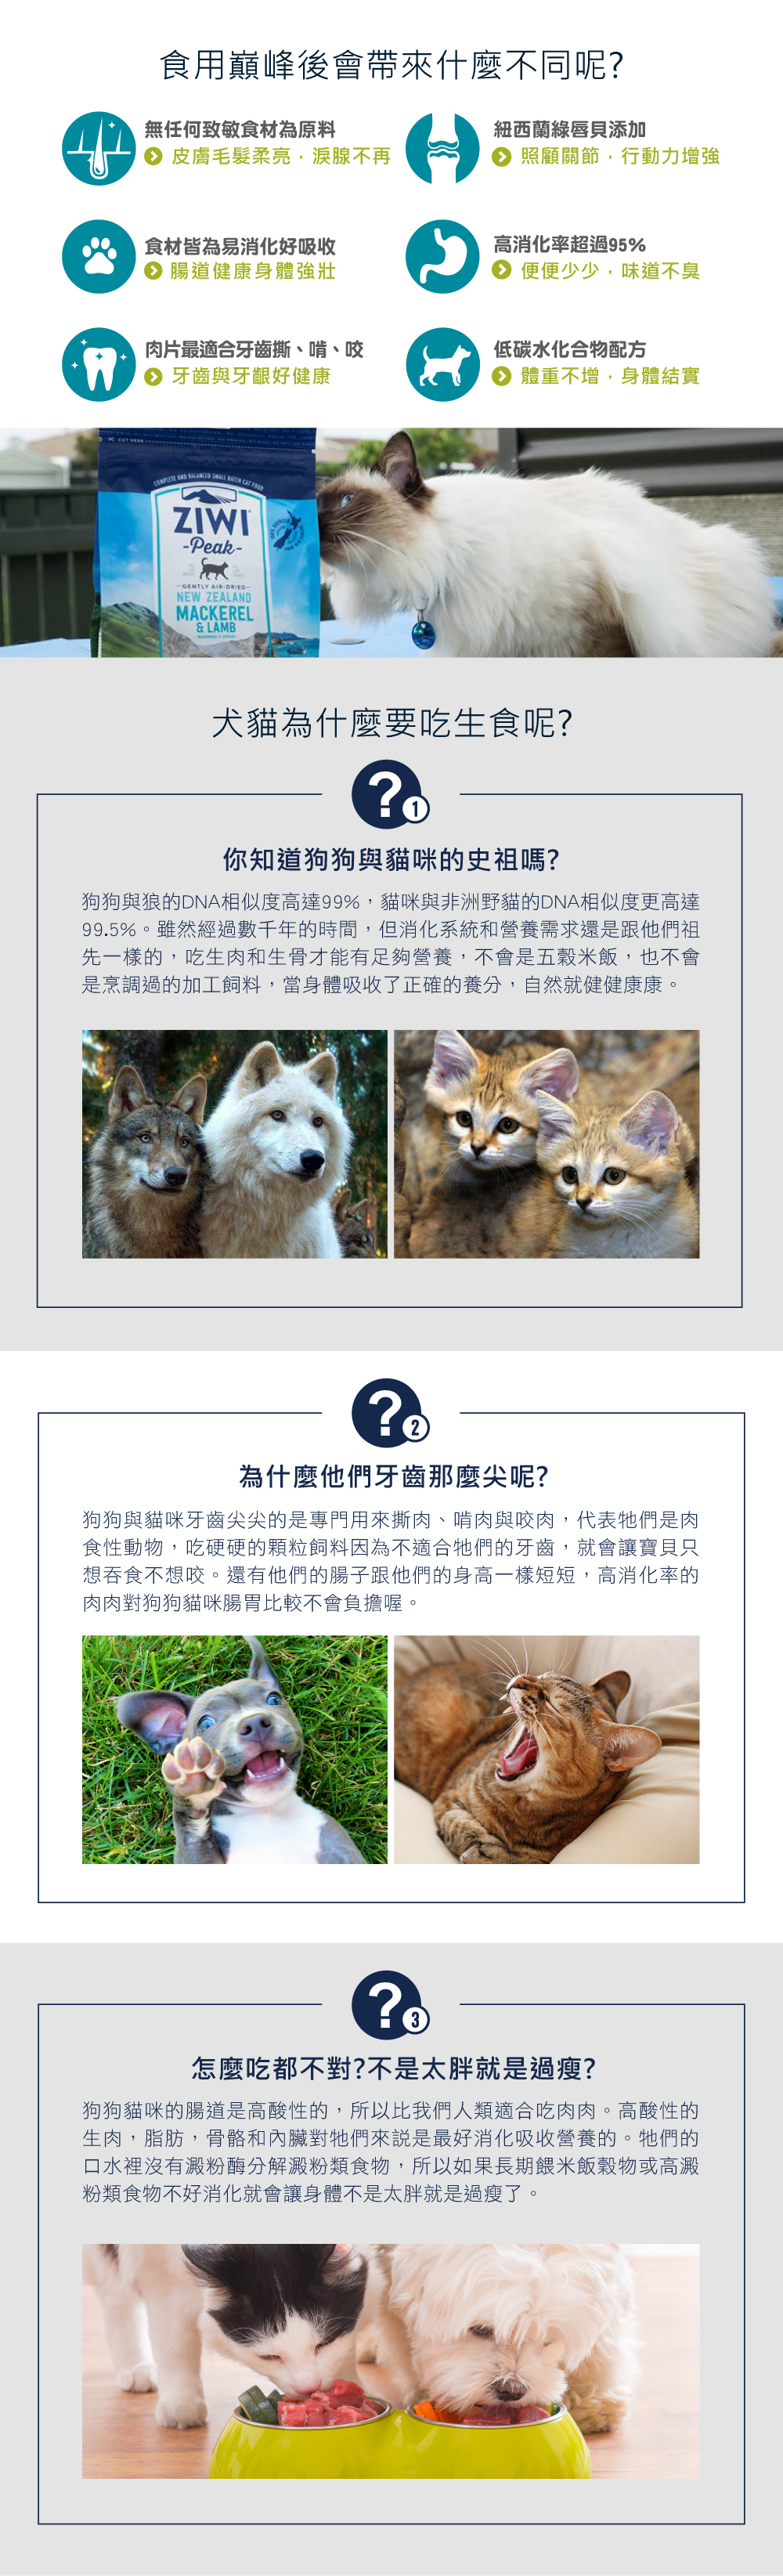 ZIWI巔峰經典系列貓糧說明頁